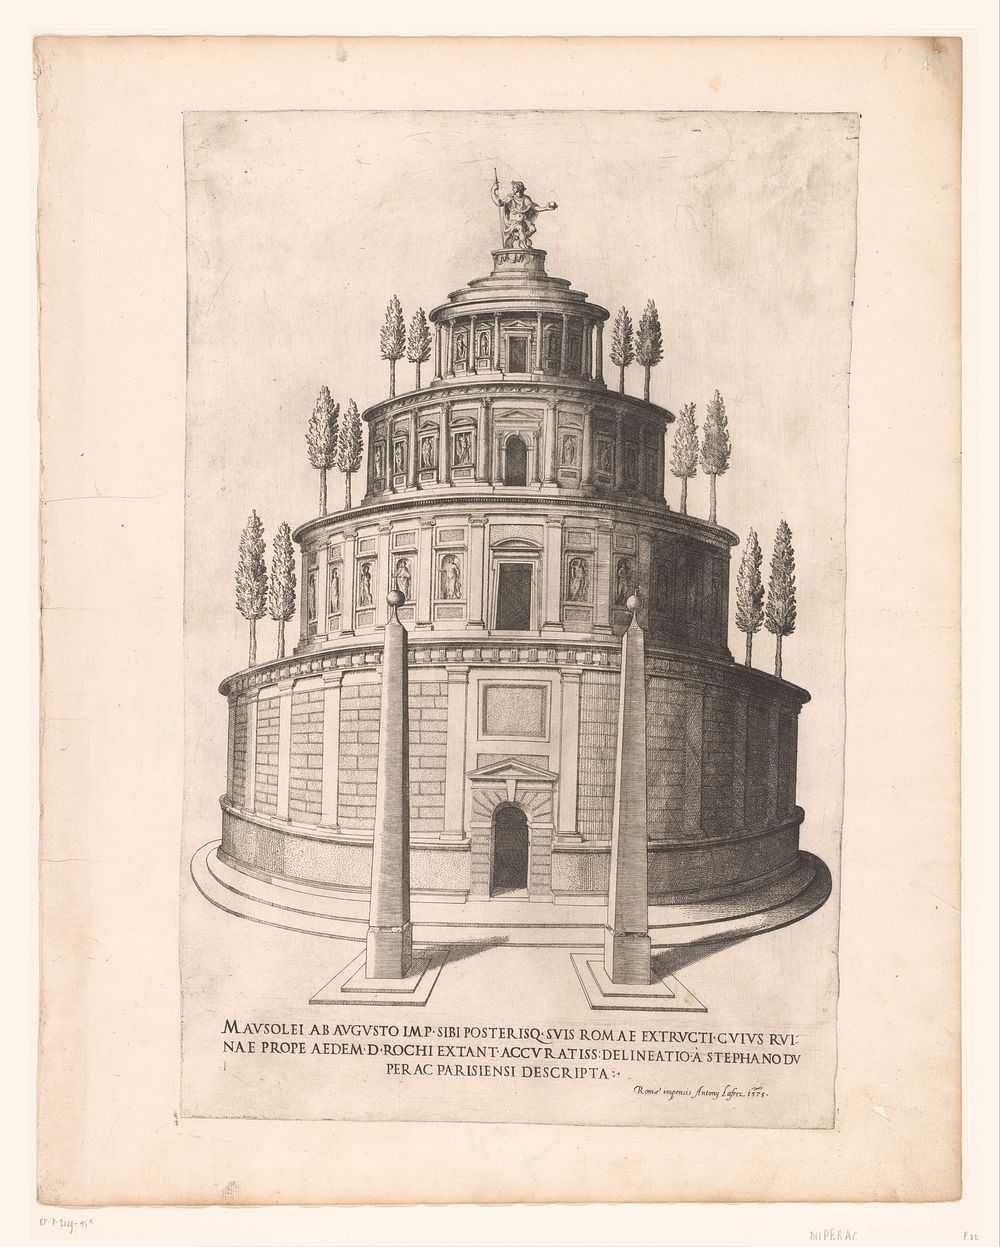 Mausoleum van Augustus (1575) by Etienne Dupérac, Etienne Dupérac and Antonio Lafreri